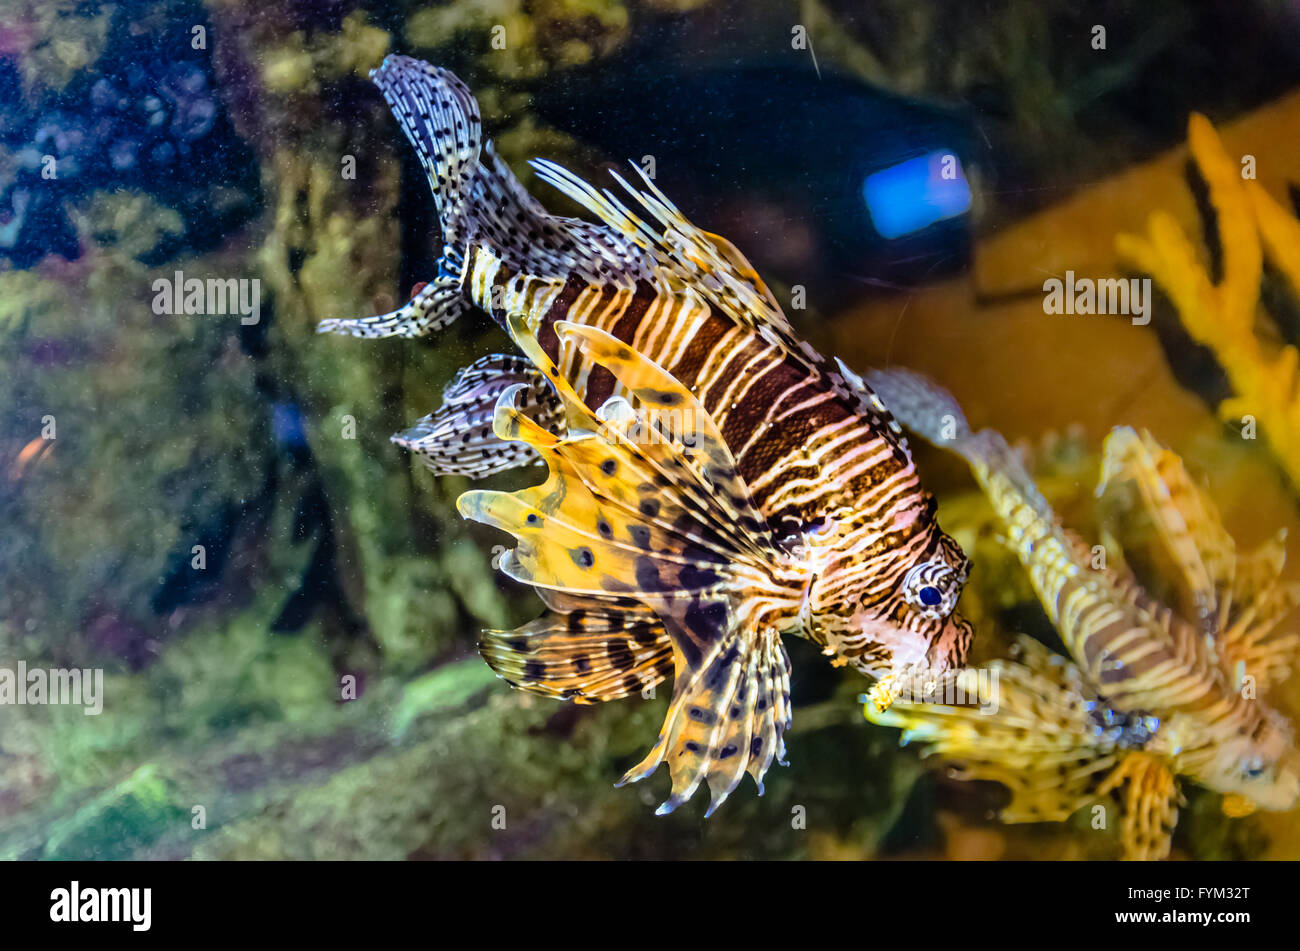 Exotische Korallen Fische im aquarium Stockfoto